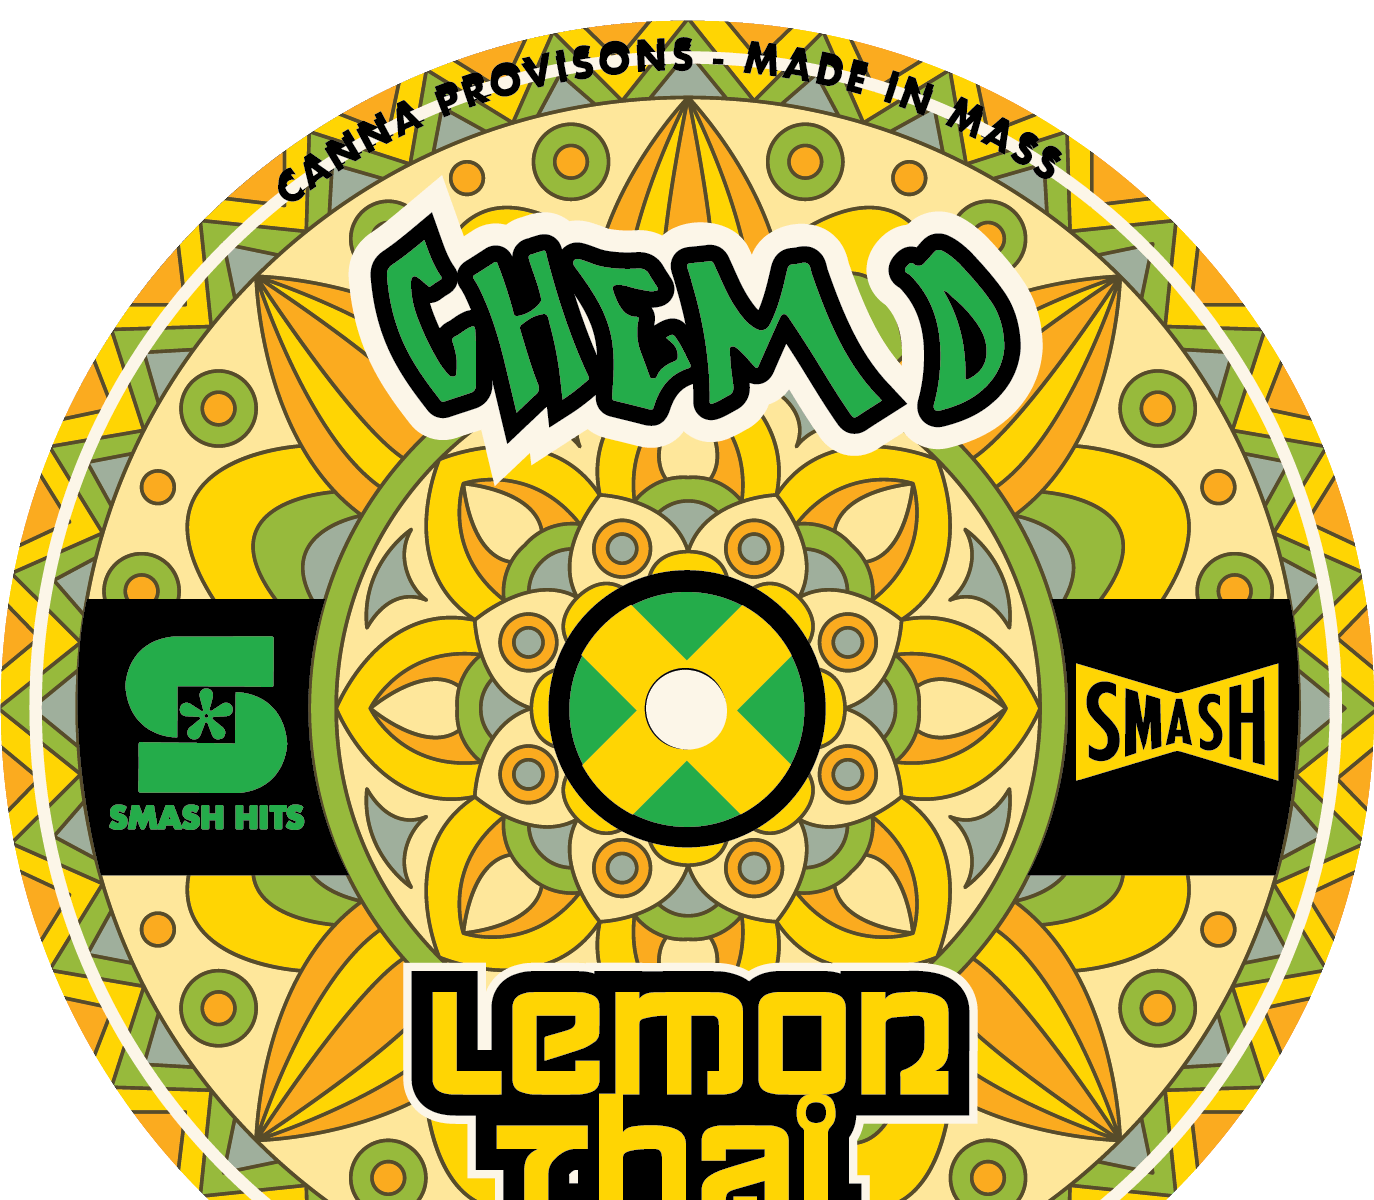 FLOWER POWER: CHEM D x LEMON THAI SMASH HITS STRAIN BY CHEMDOG